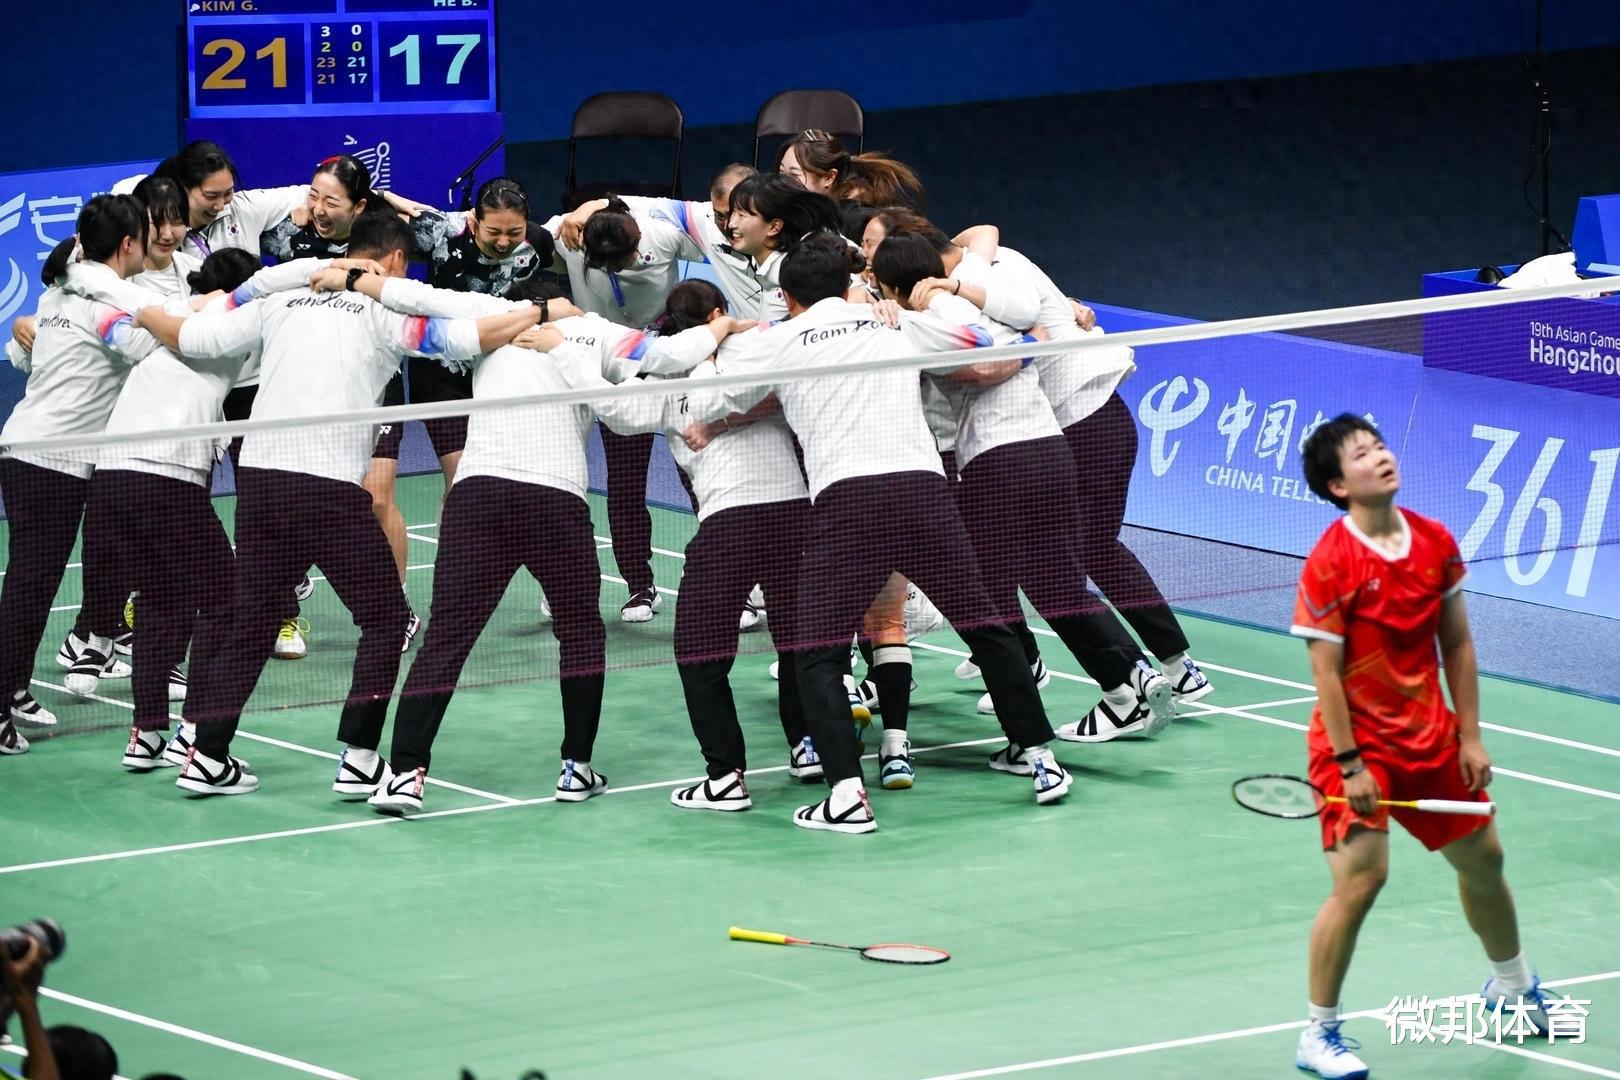 盘点韩国和中国举办体育比赛出现的争议